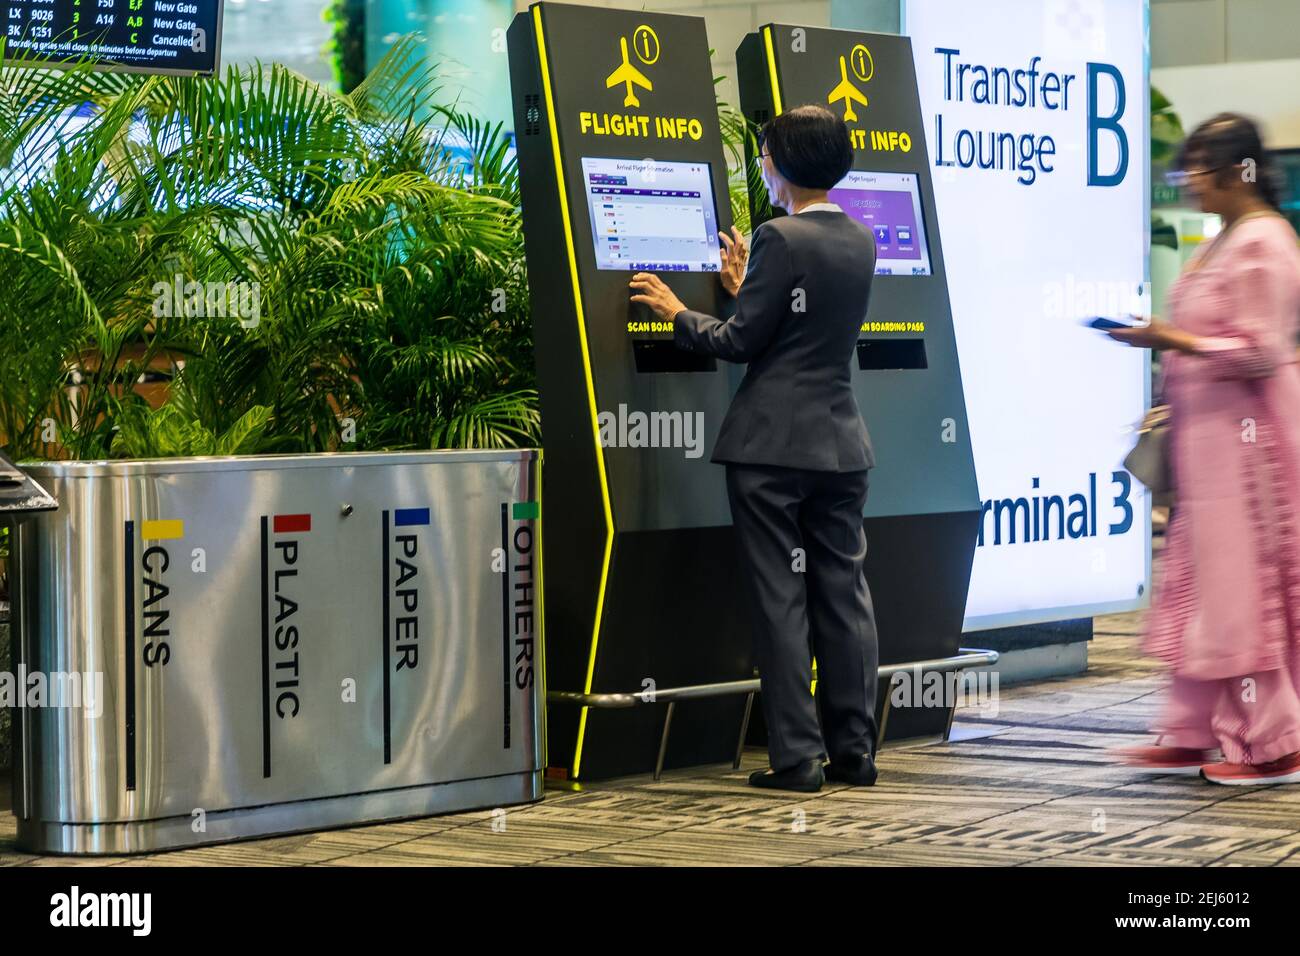 Una donna sta usando un'interfaccia di informazioni dell'aeroporto, mentre un'altra donna è waiting.on il lato sinistro tre bidoni della spazzatura. Foto Stock